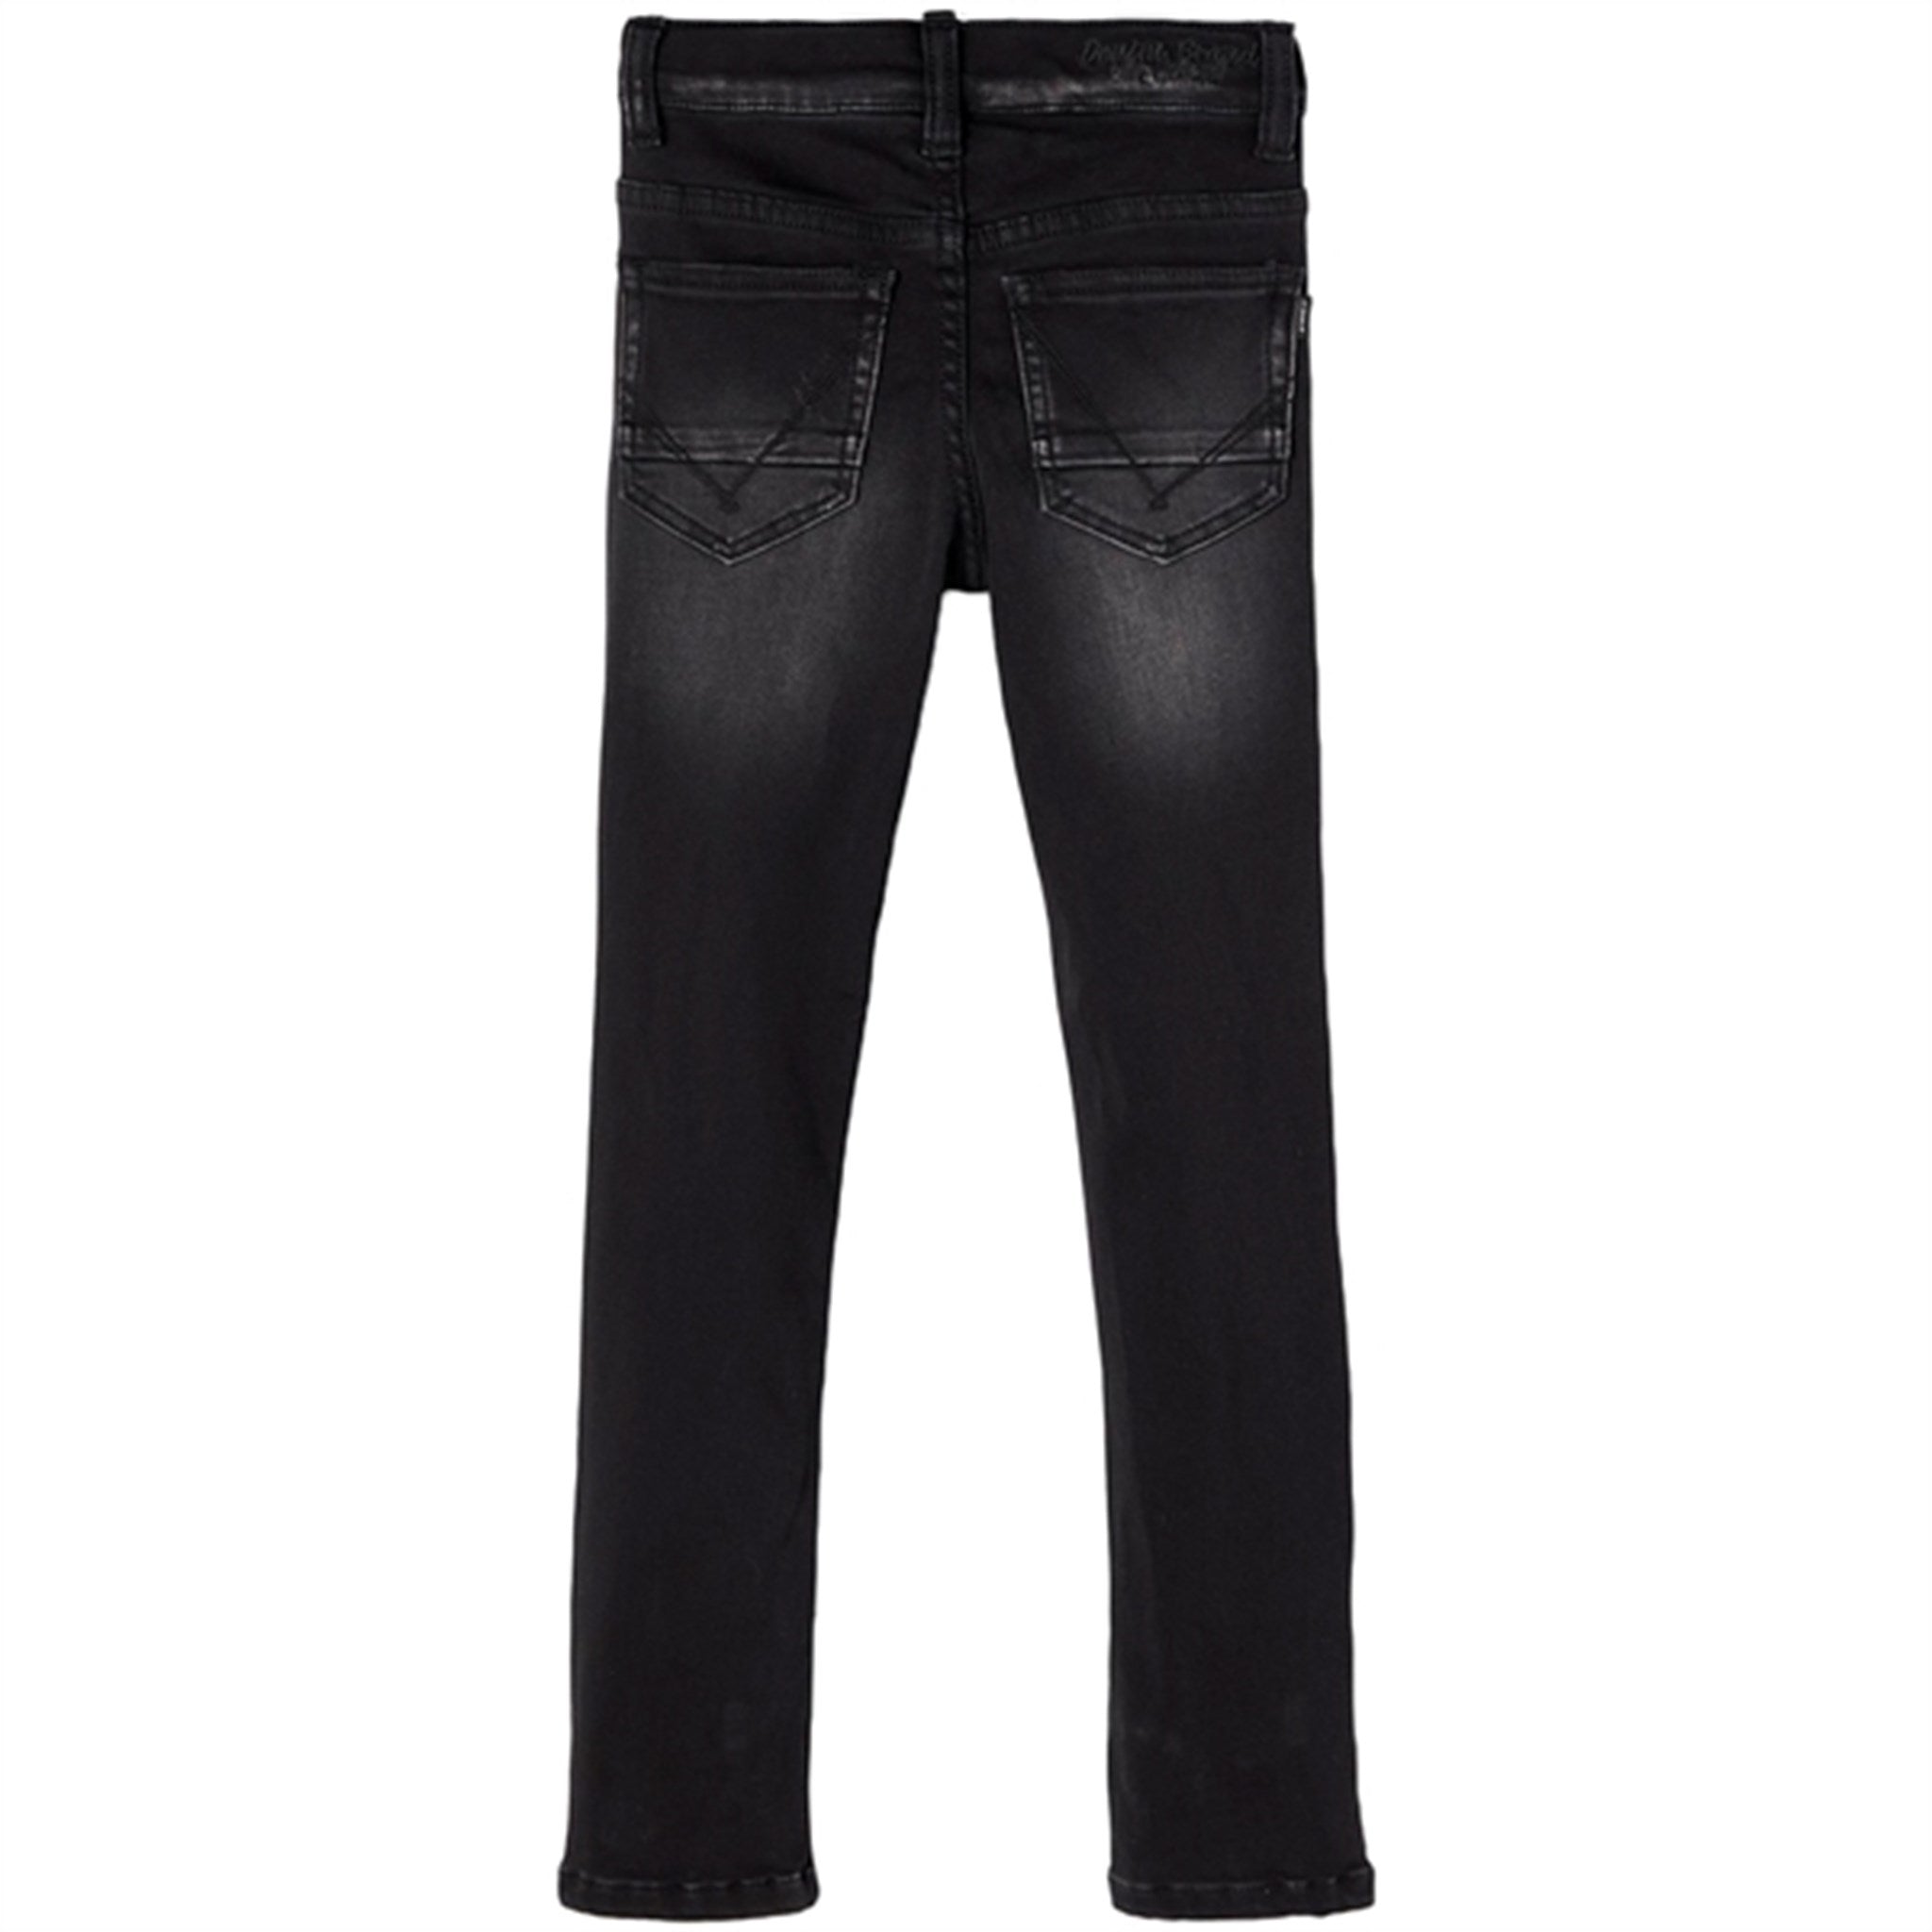 Name it Black Denim Theo NOOS Jeans 4